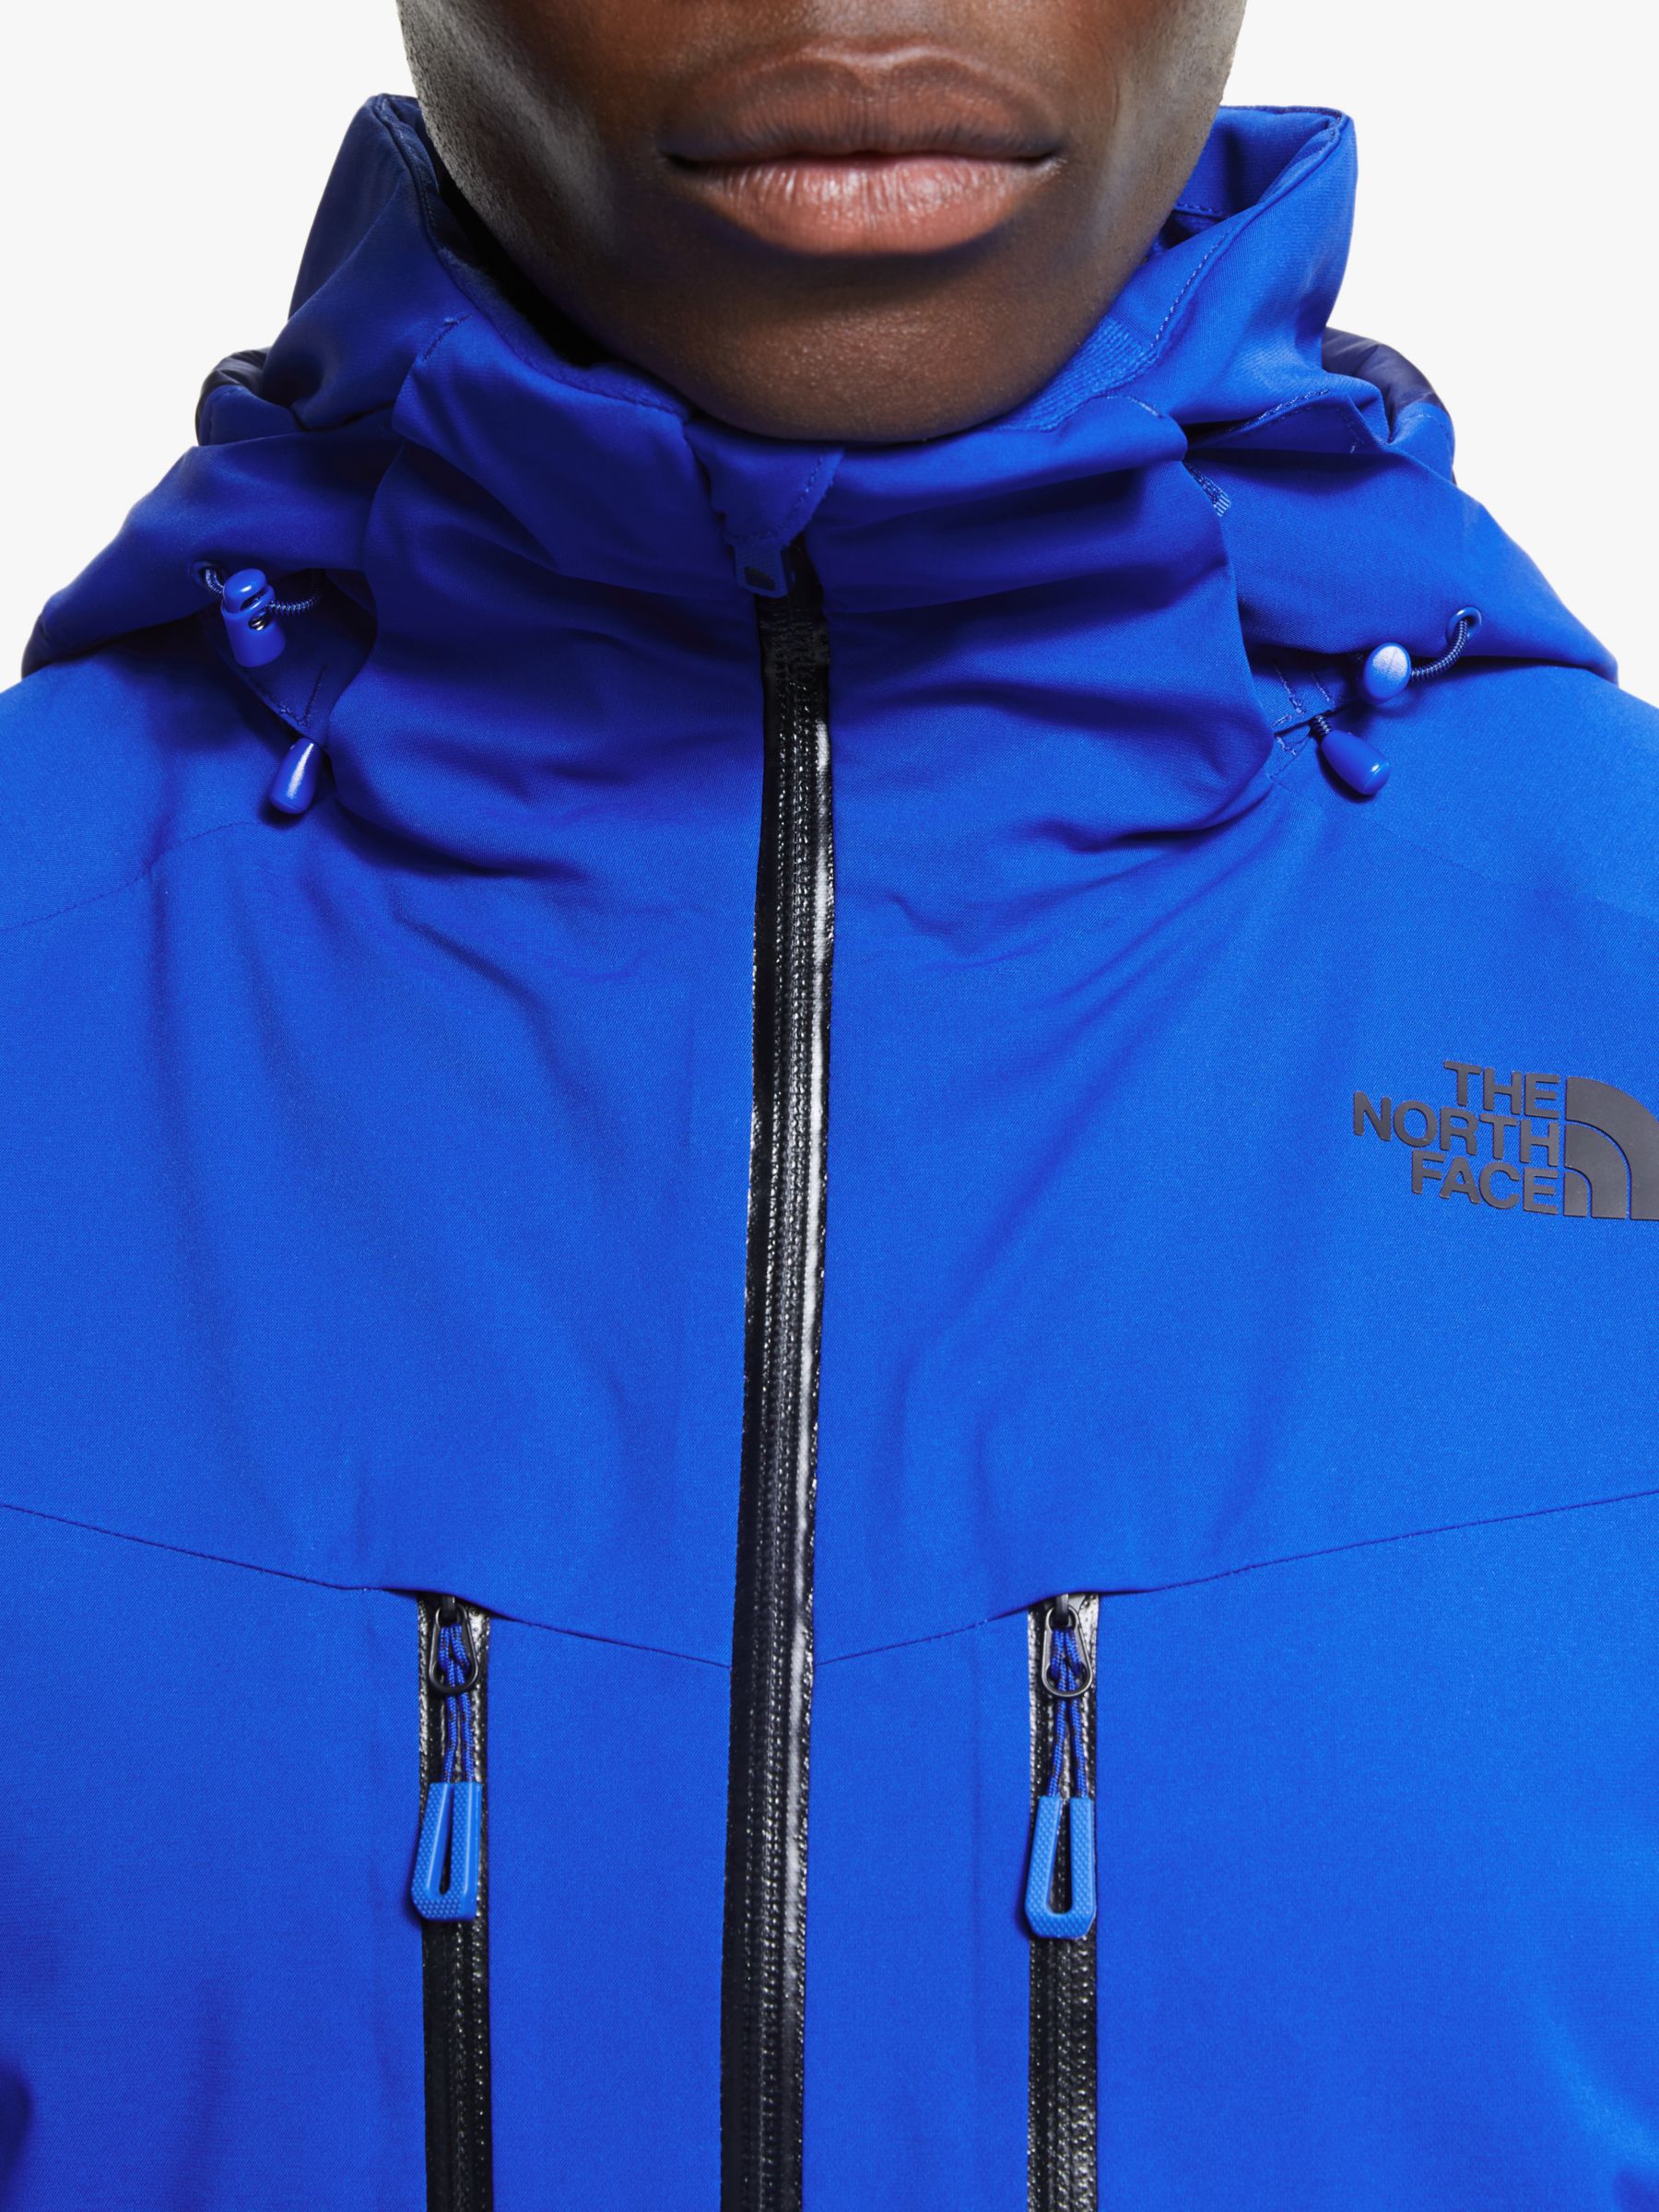 north face ski jacket blue